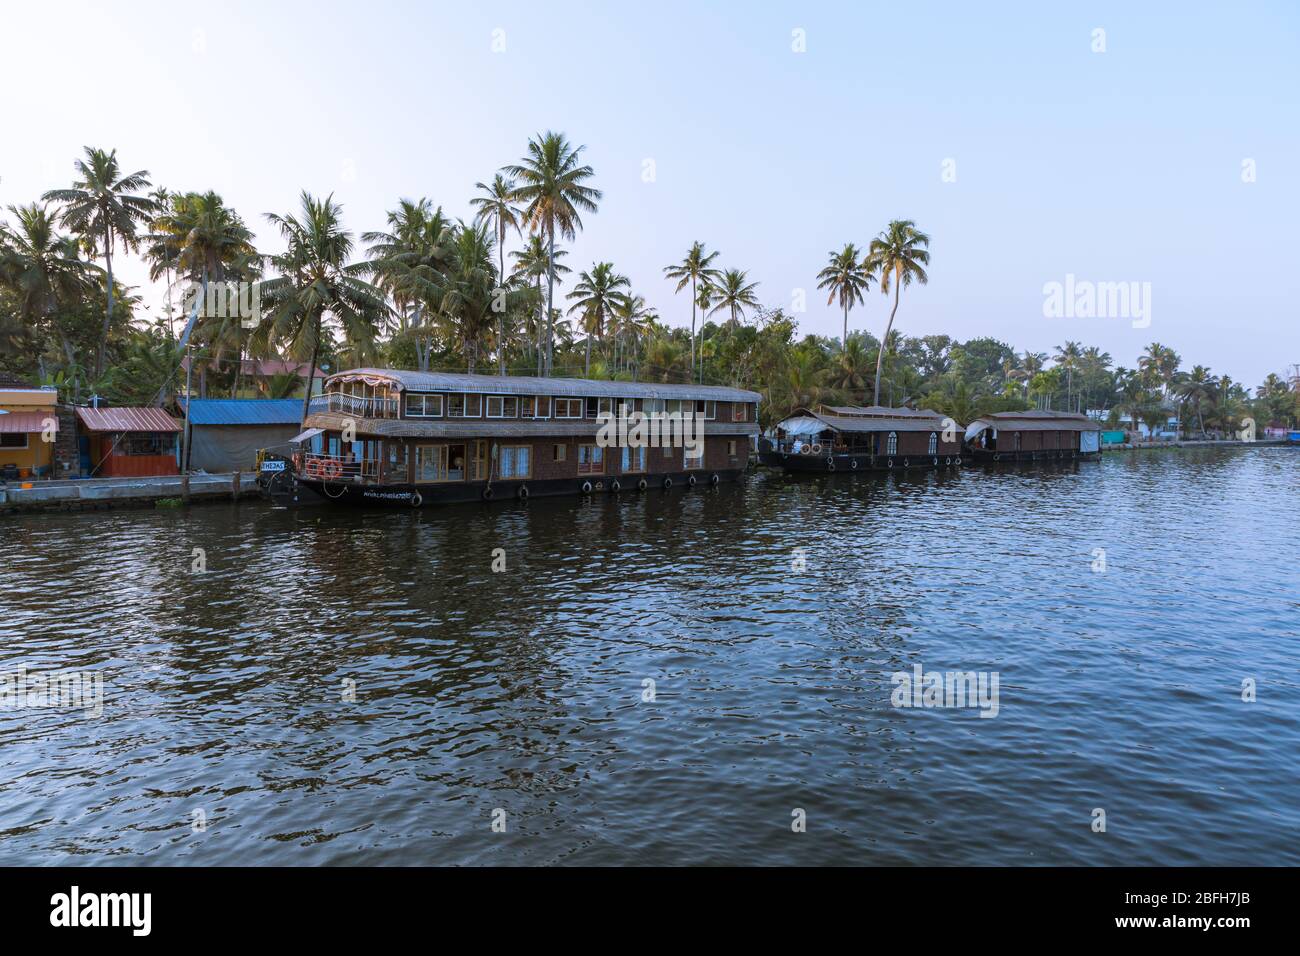 Alleppey, Kerala - 6 janvier 2019: Bateaux de maison garés dans les eaux de dos d'alleppey kerala inde Banque D'Images